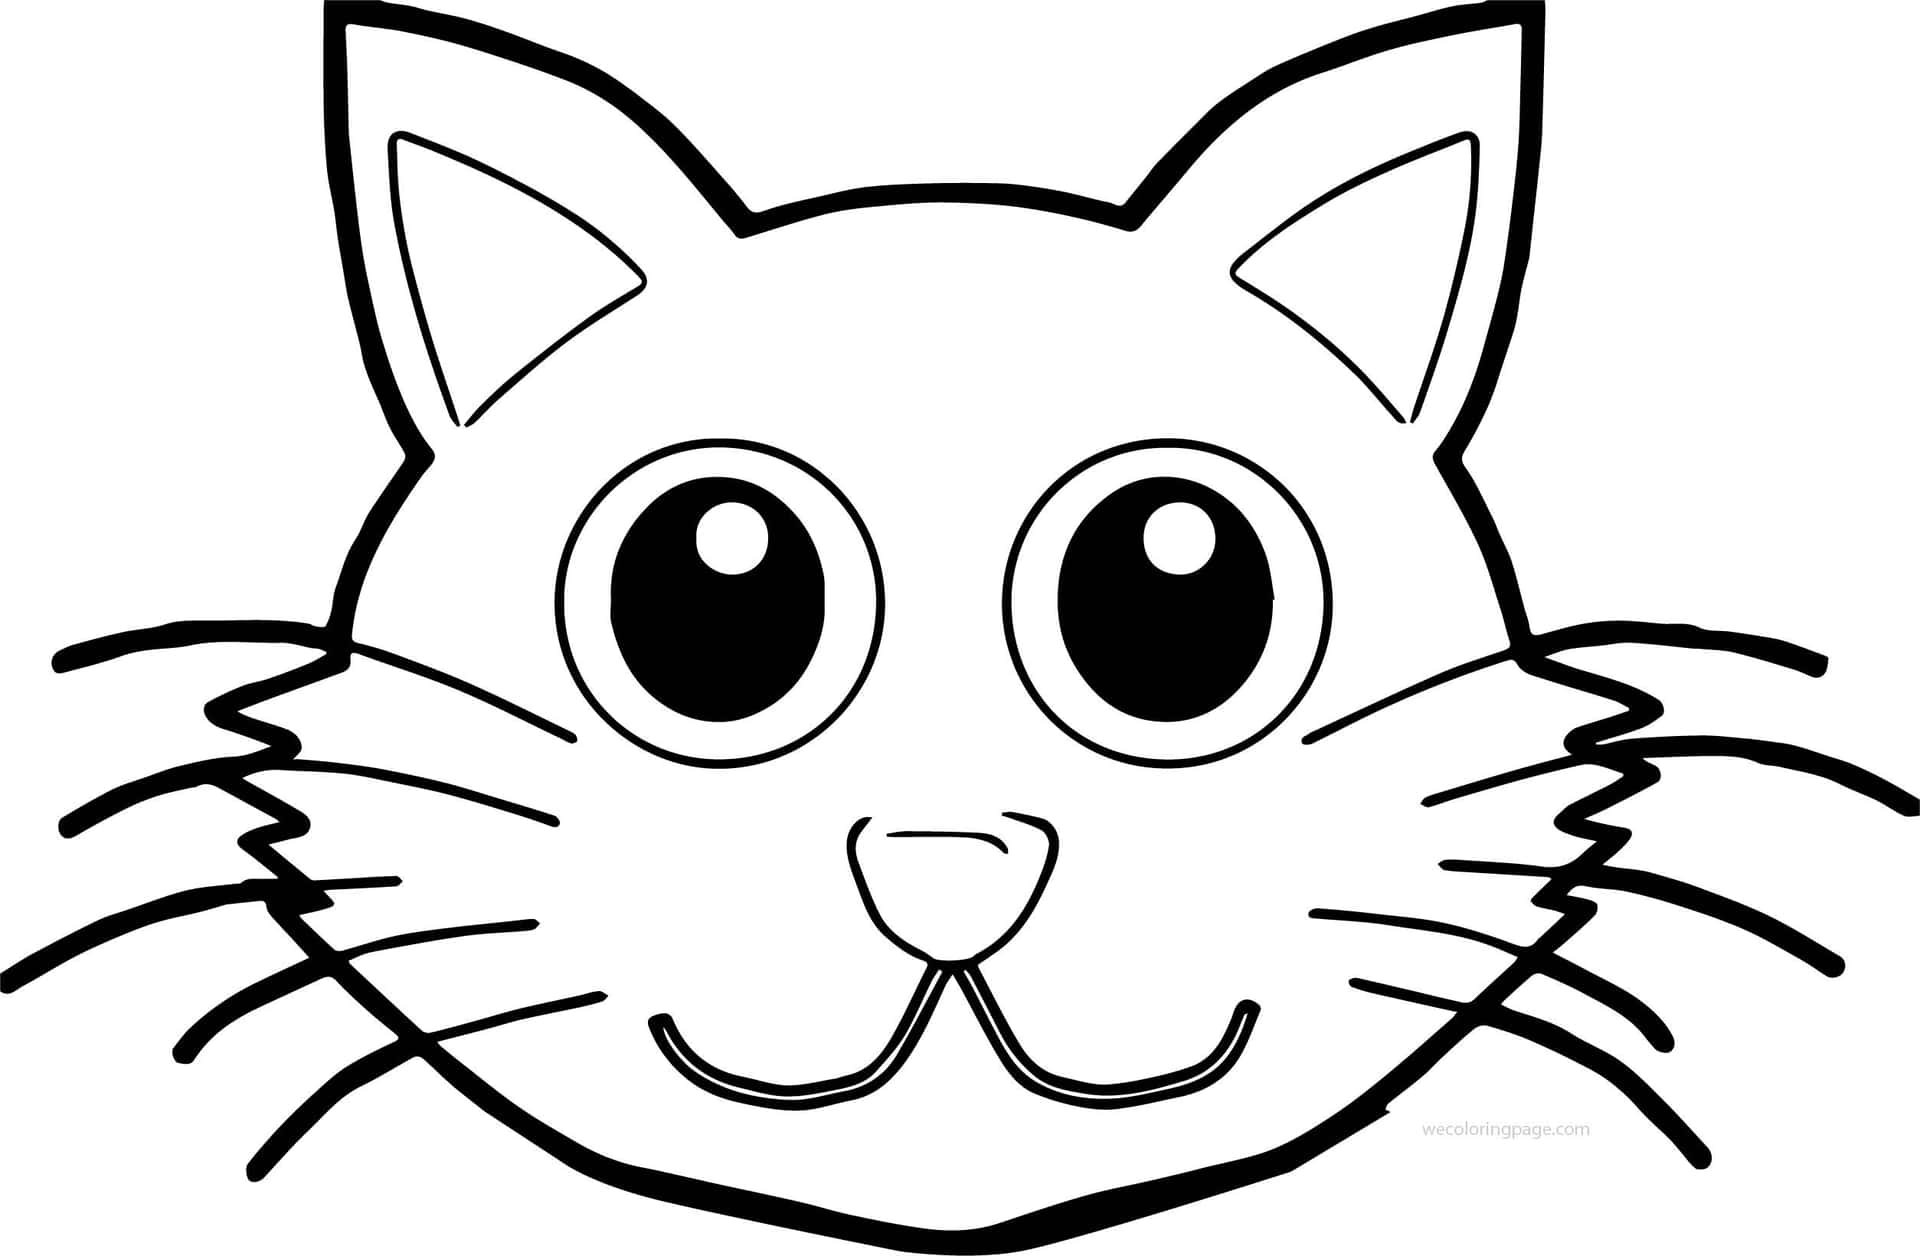 Imágenespara Colorear De Gatos Con Ojos Brillantes